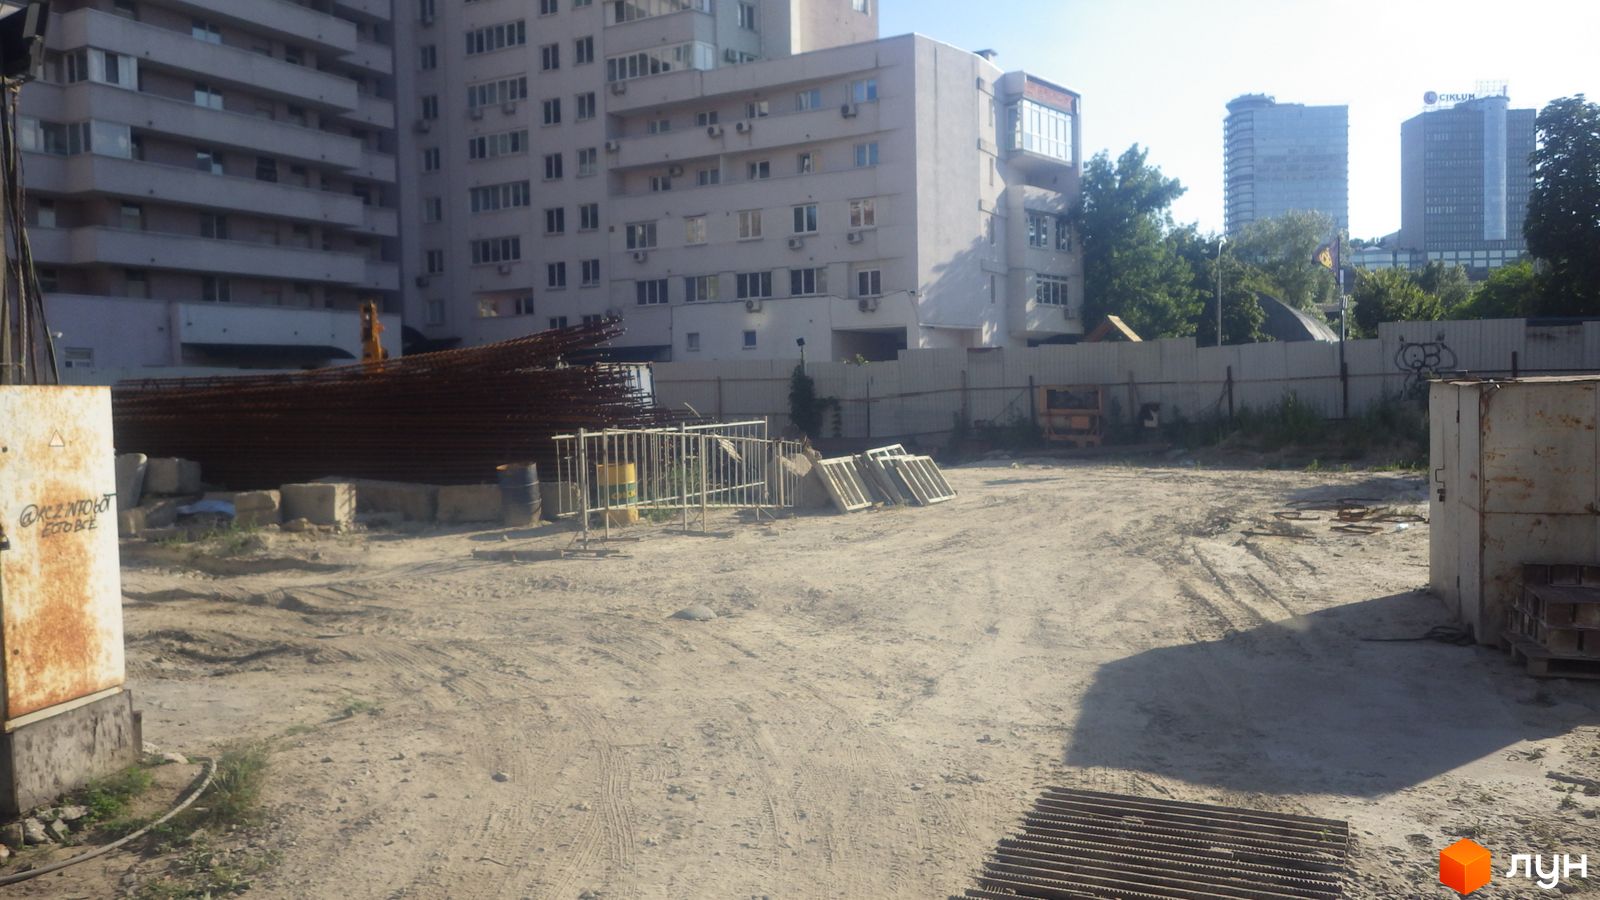 Хід будівництва вул. Казимира Малевича, 44, 46, 0, липень 2020